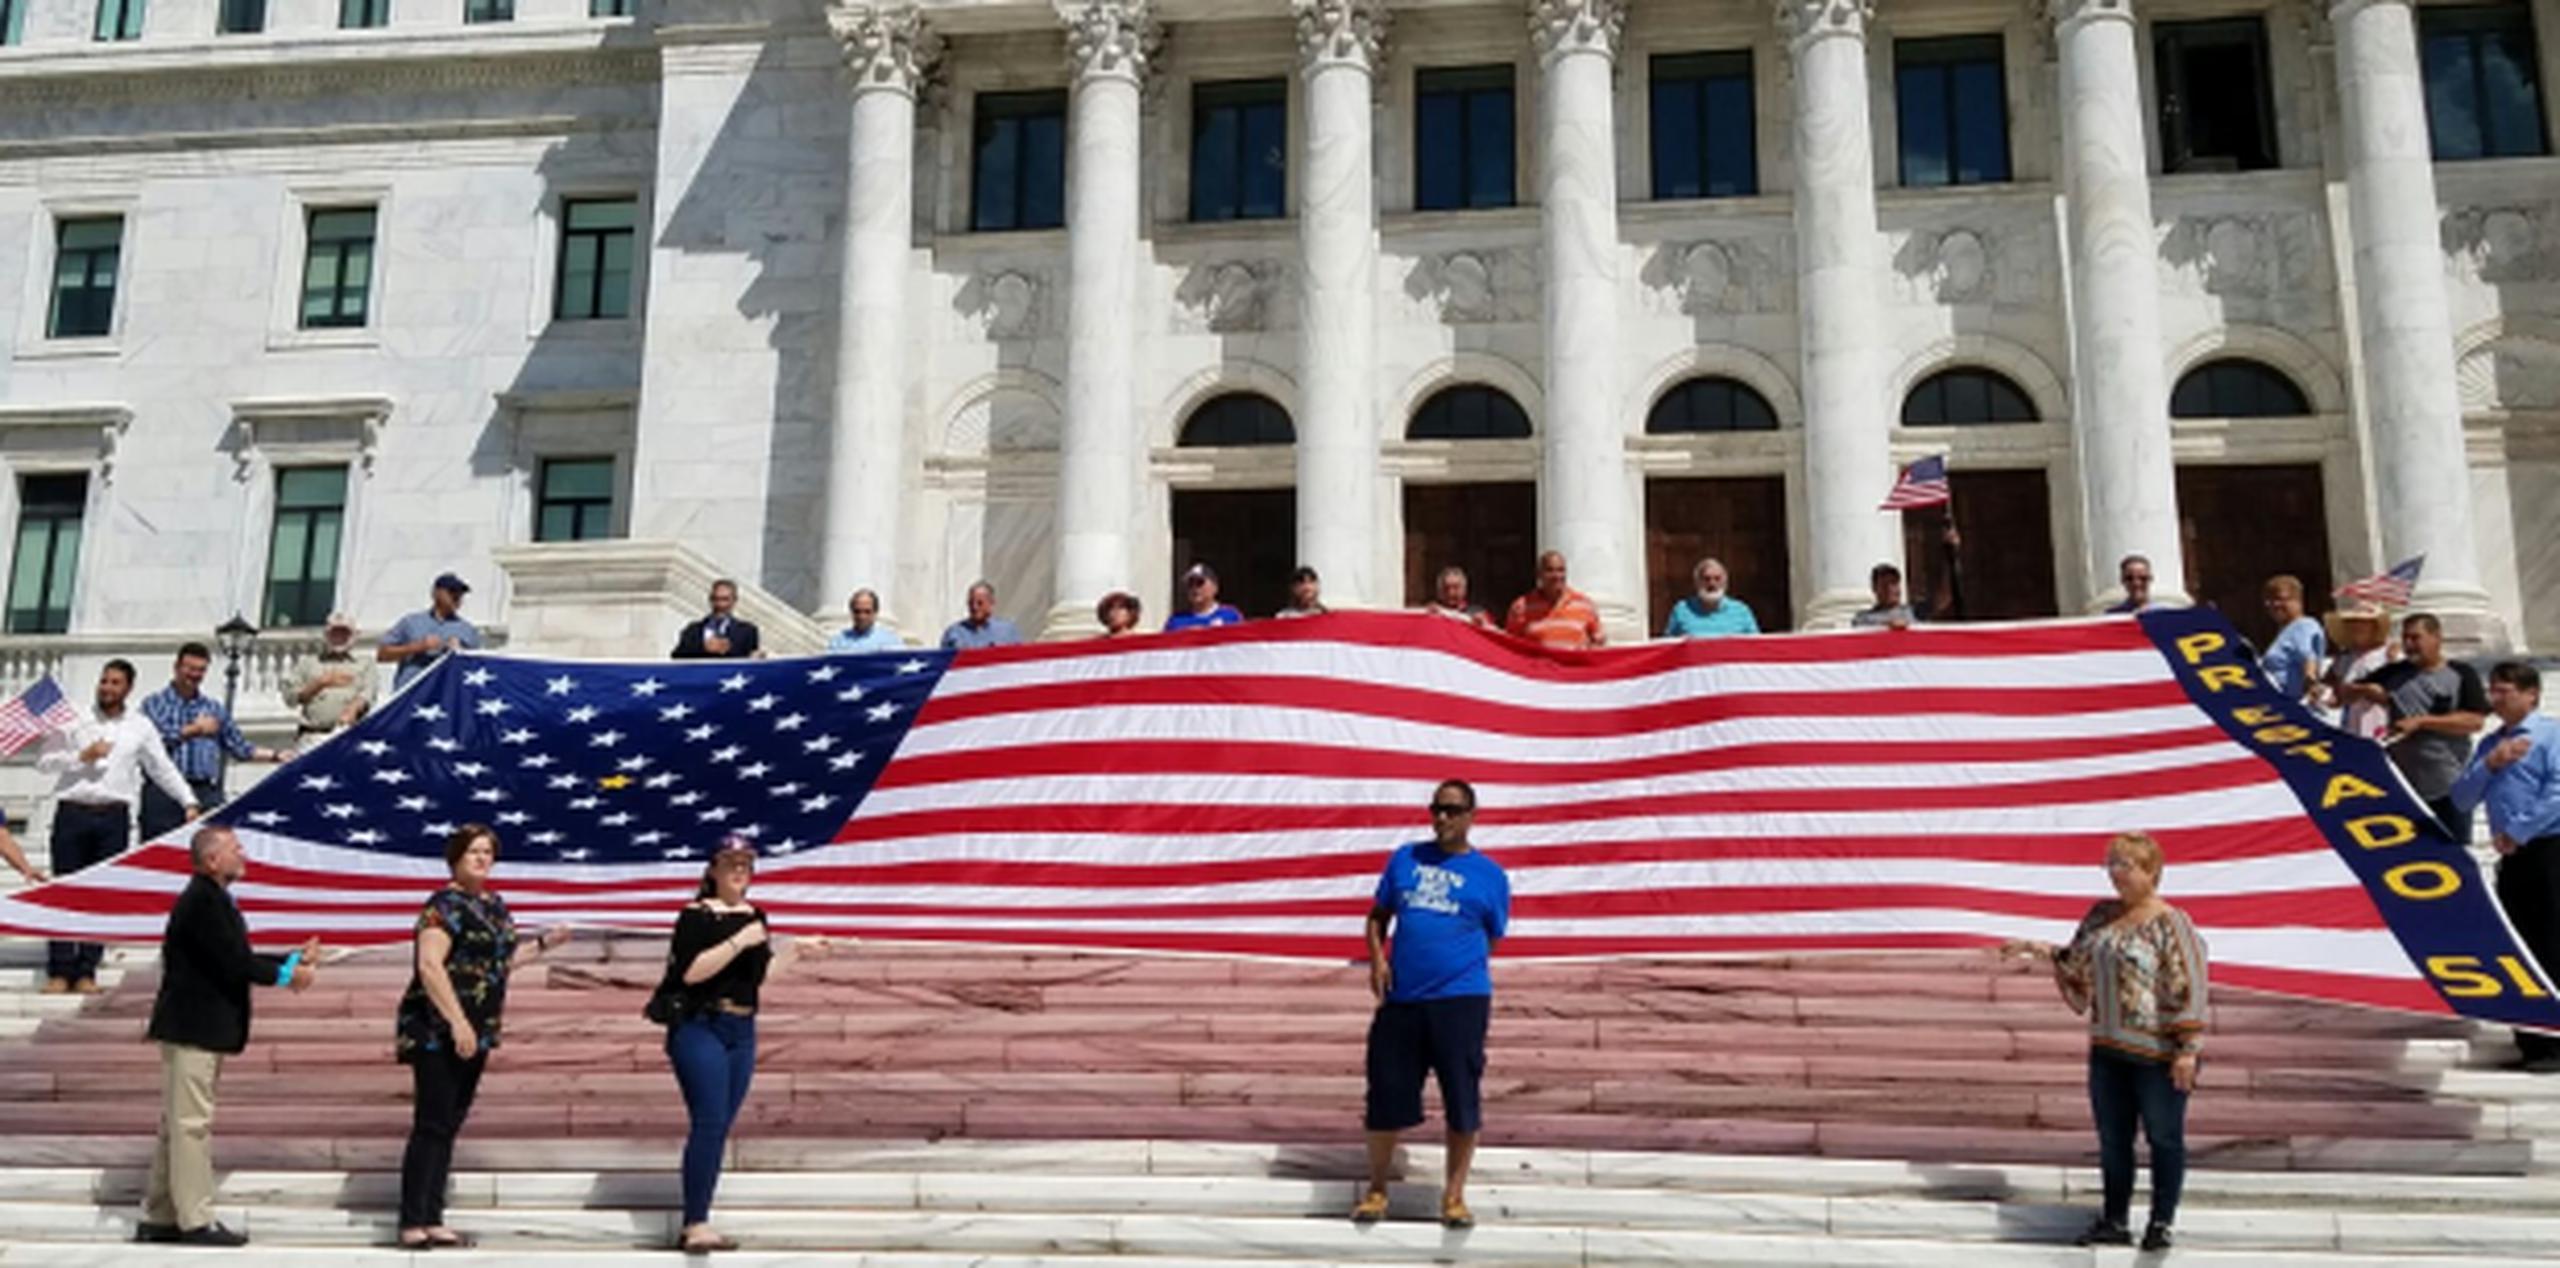 Los participantes desplegaron una bandera gigante frente al Capitolio. (Suministrada)